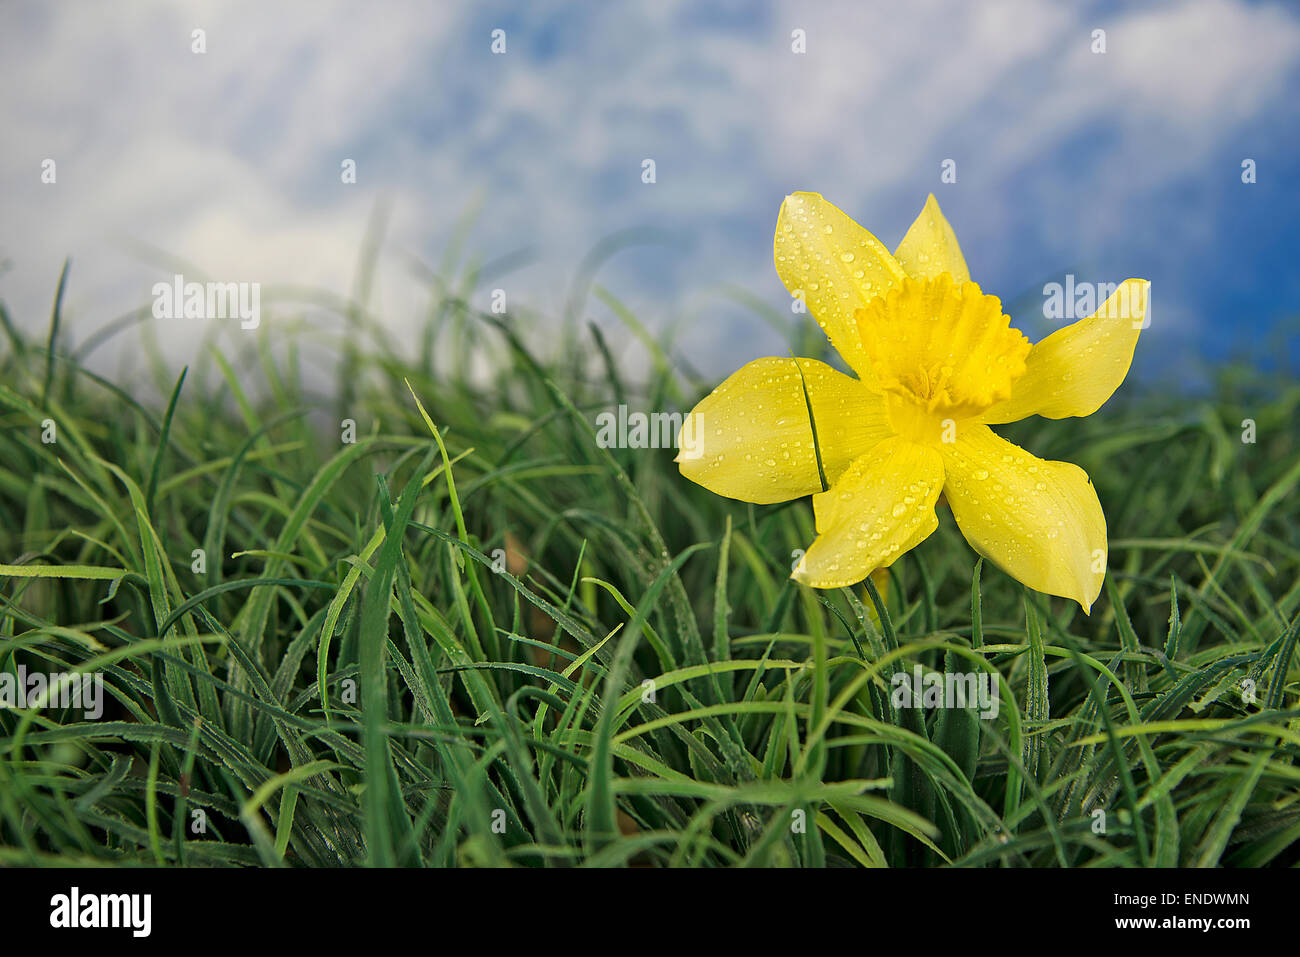 Giallo singolo daffodil in erba con le goccioline d'acqua. Foto Stock